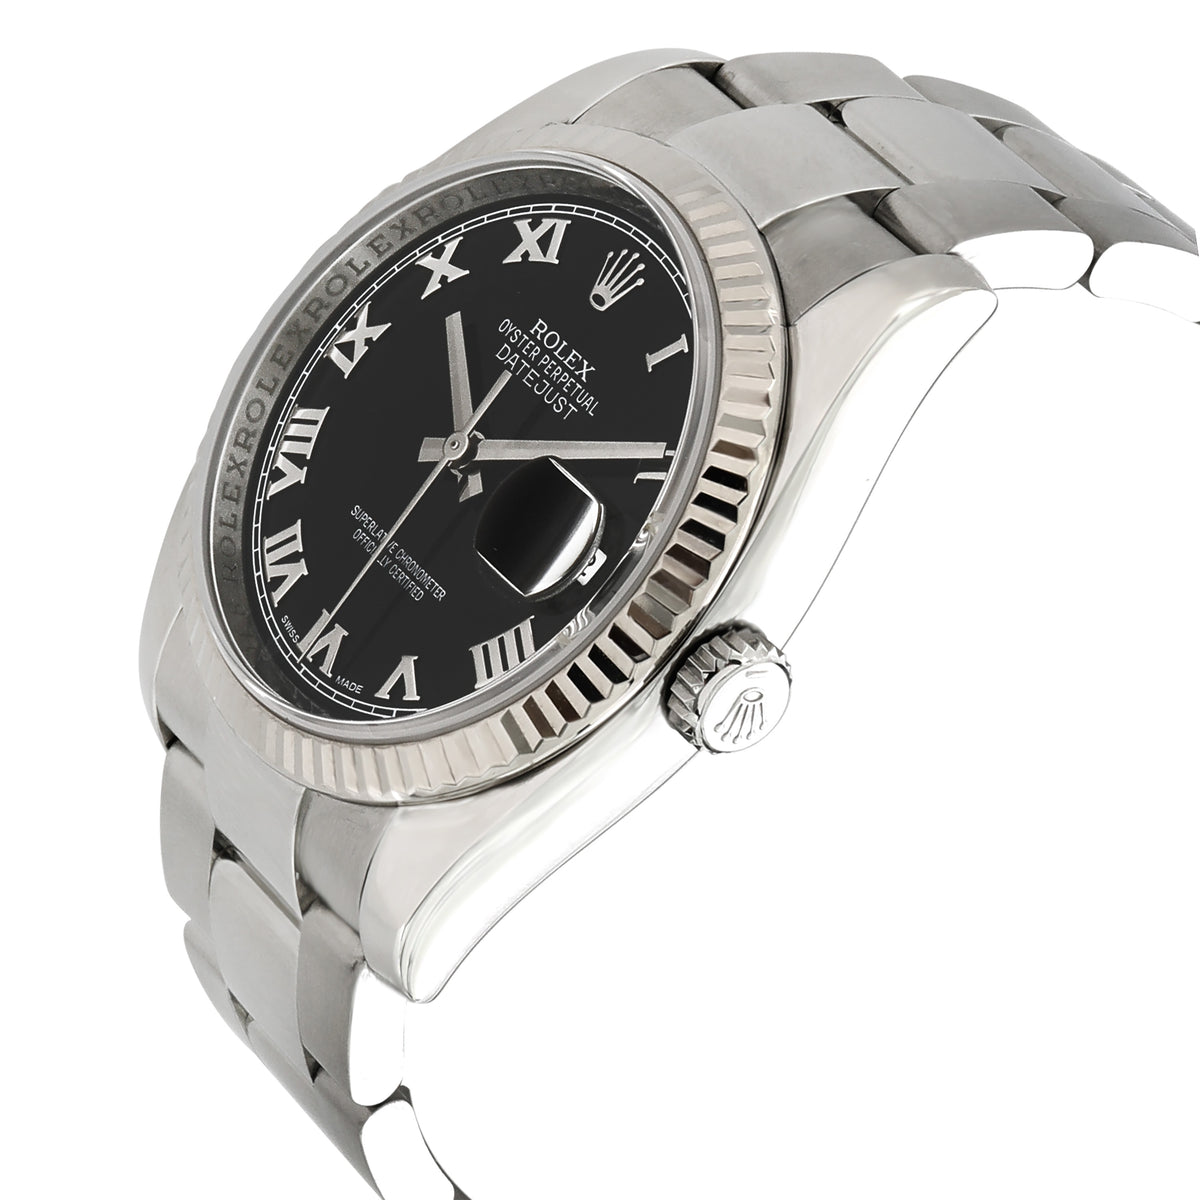 Rolex Datejust 126234 Unisex Watch in 18kt Stainless Steel/White Gold